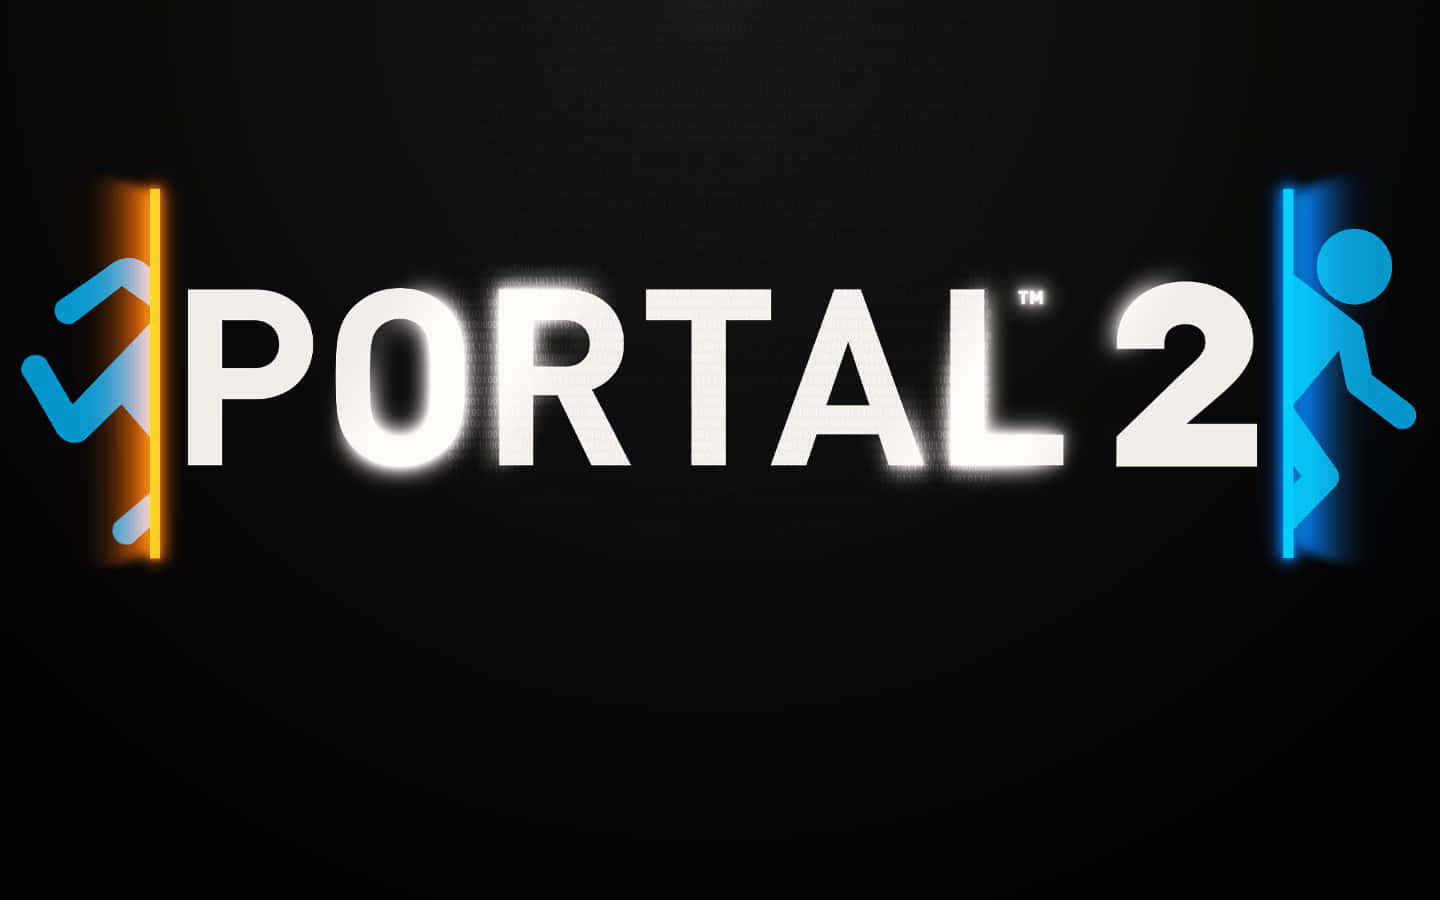 Portal2 - Dator - Dator - Dator - Dator - Dator - Dator